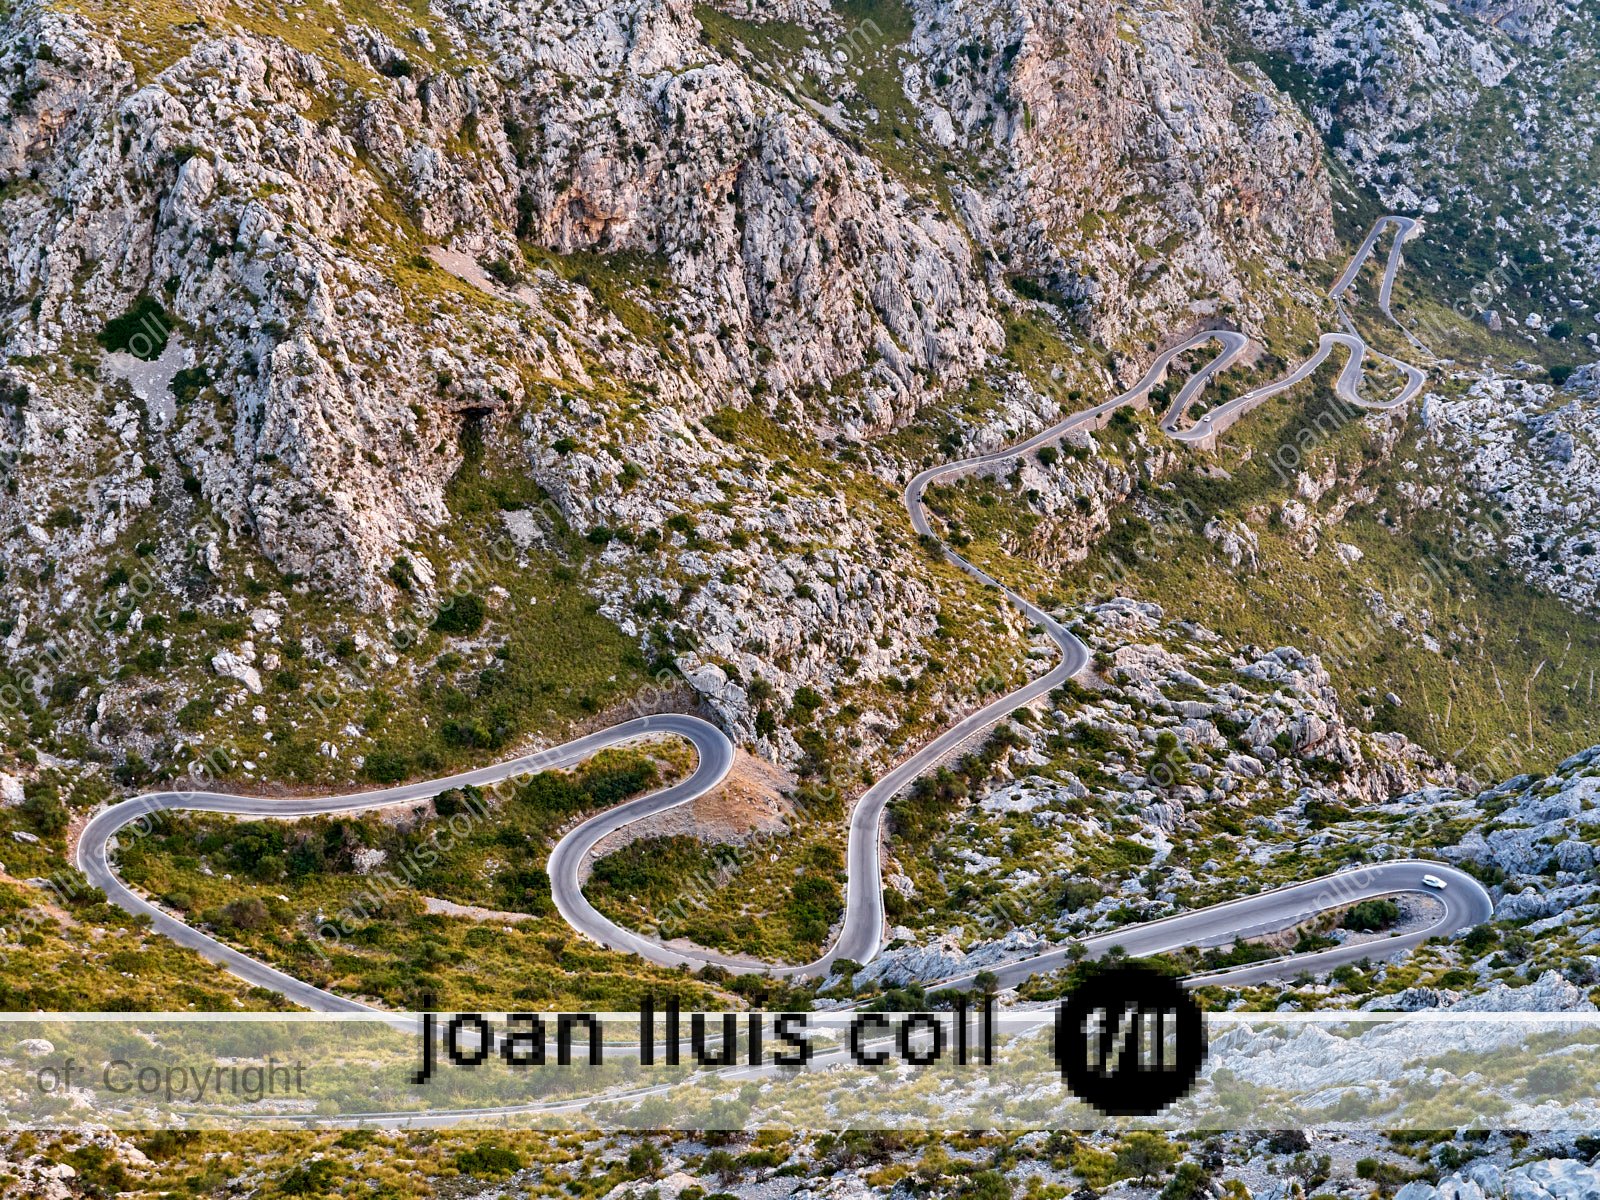 Carretera Sa Calobra | Joan Lluís Coll - fotografies